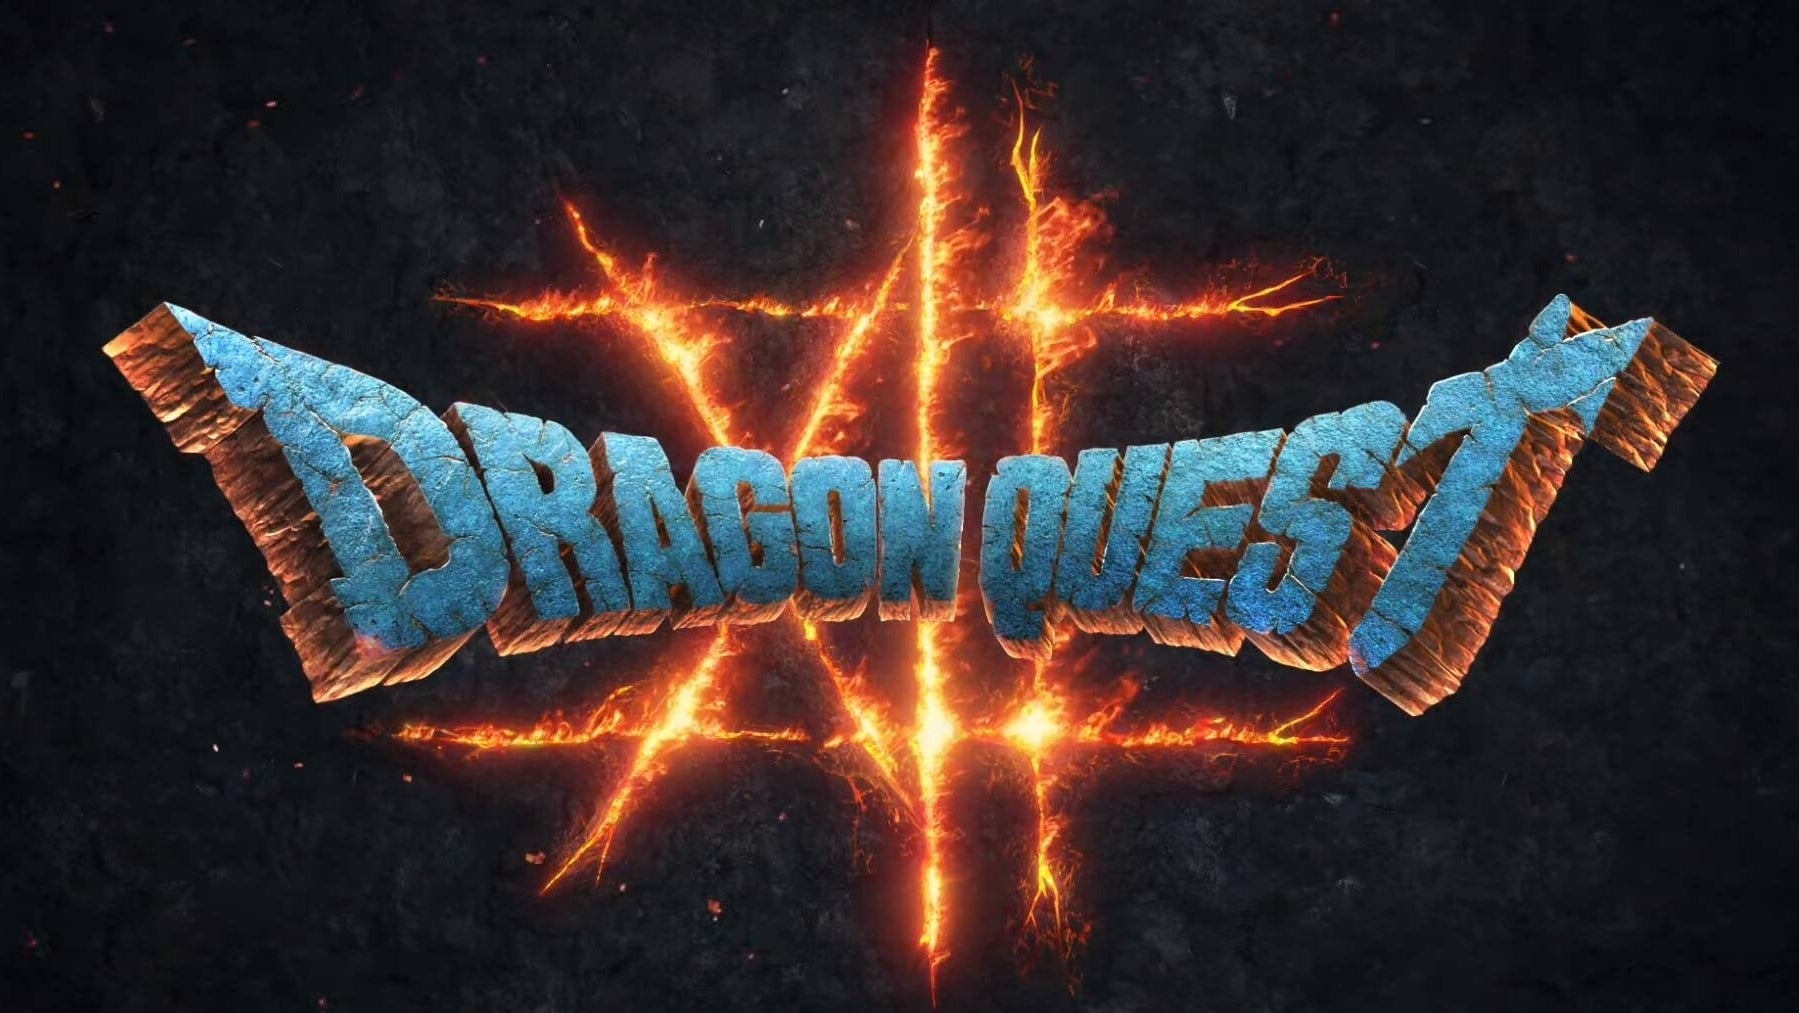 Immagine di Dragon Quest XII: The Flames of Fate annunciato con trailer e primi dettagli